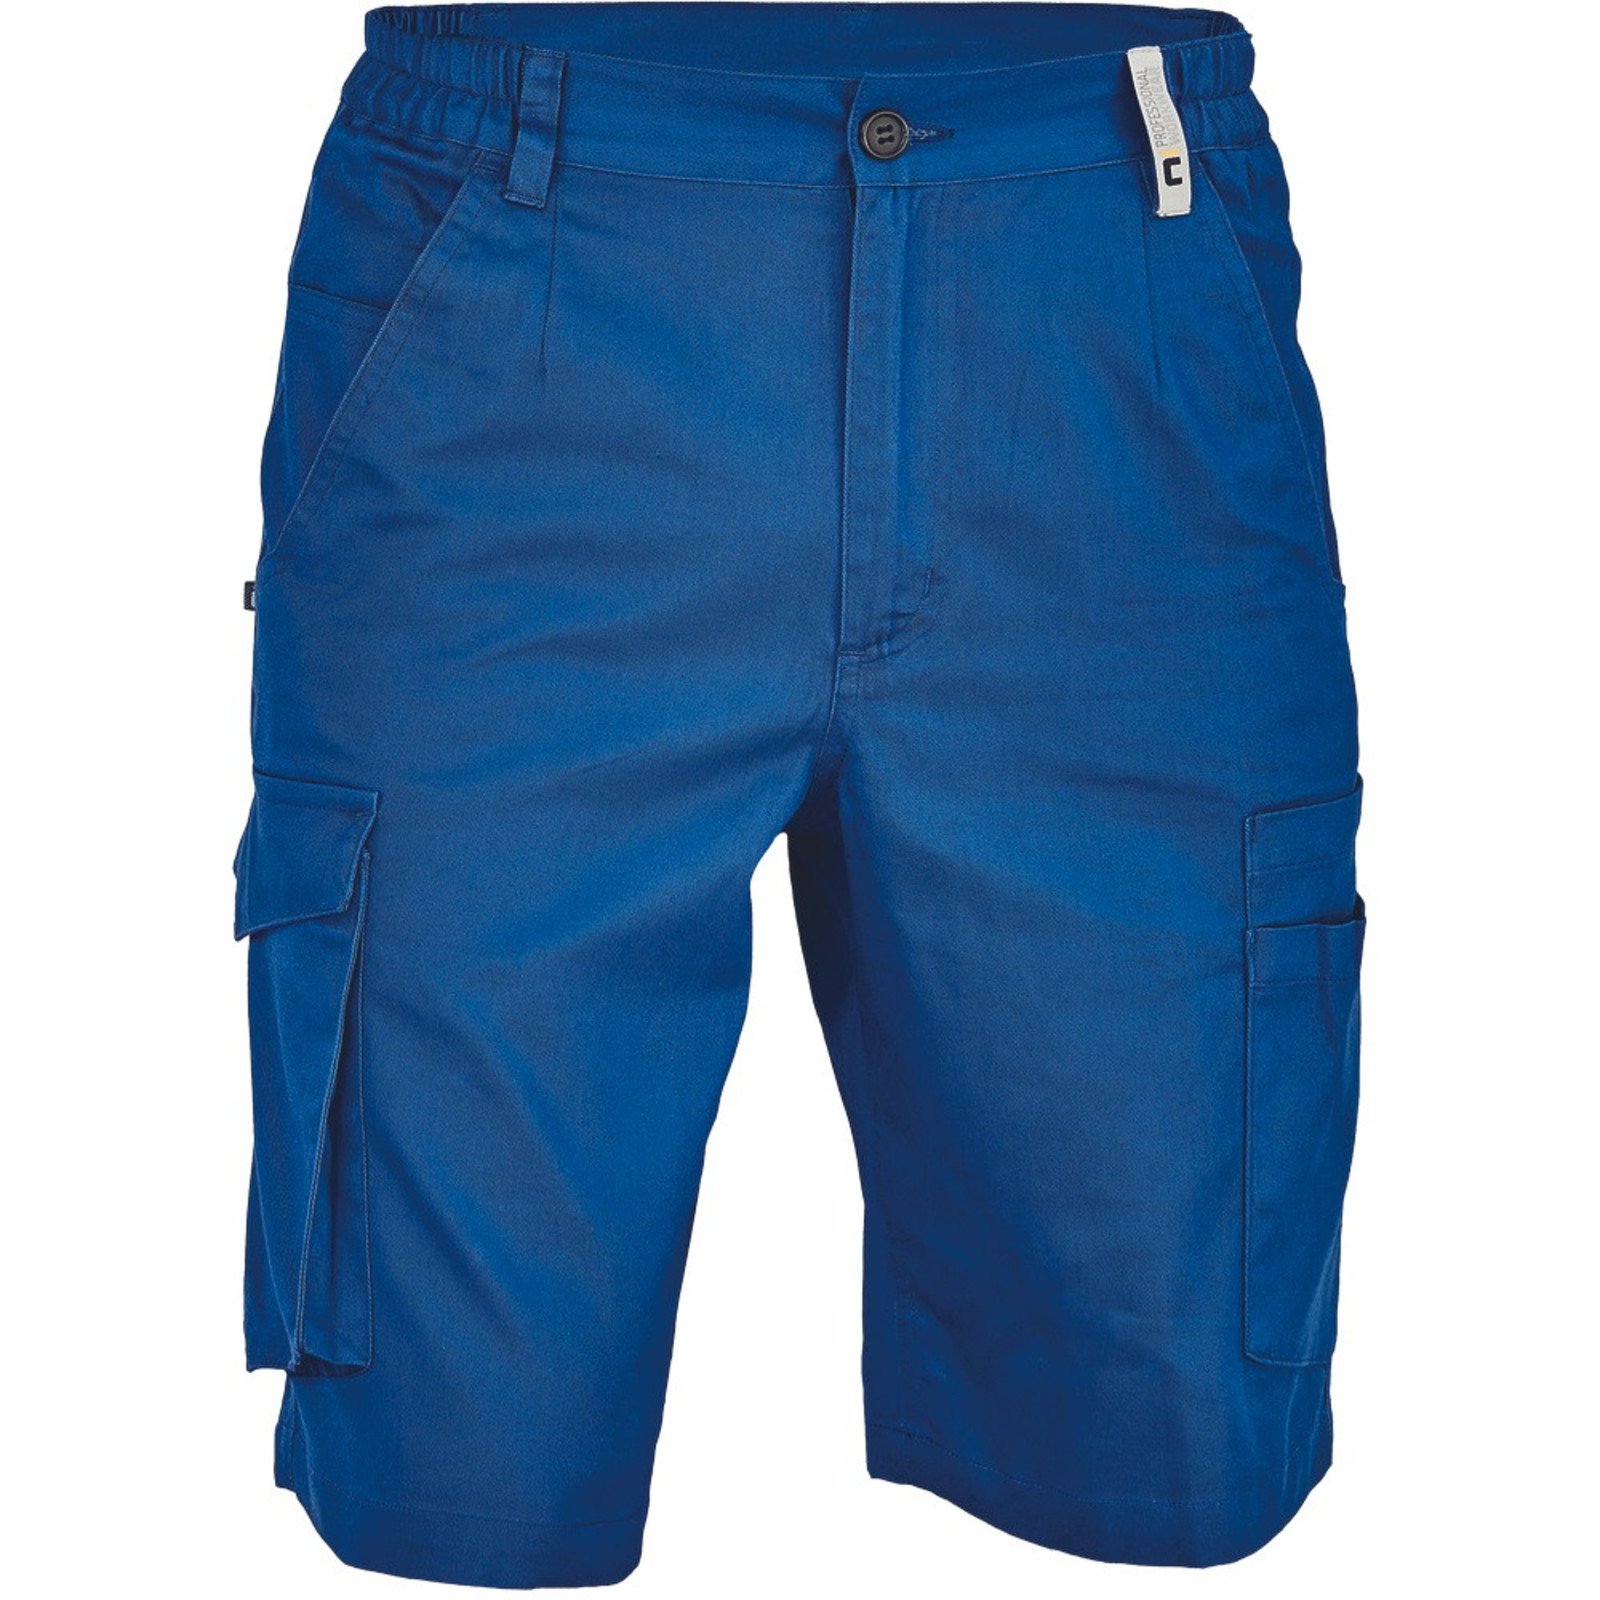 Pánske pracovné šortky Cerva Ciudades Basic Gijon - veľkosť: 50, farba: royal blue